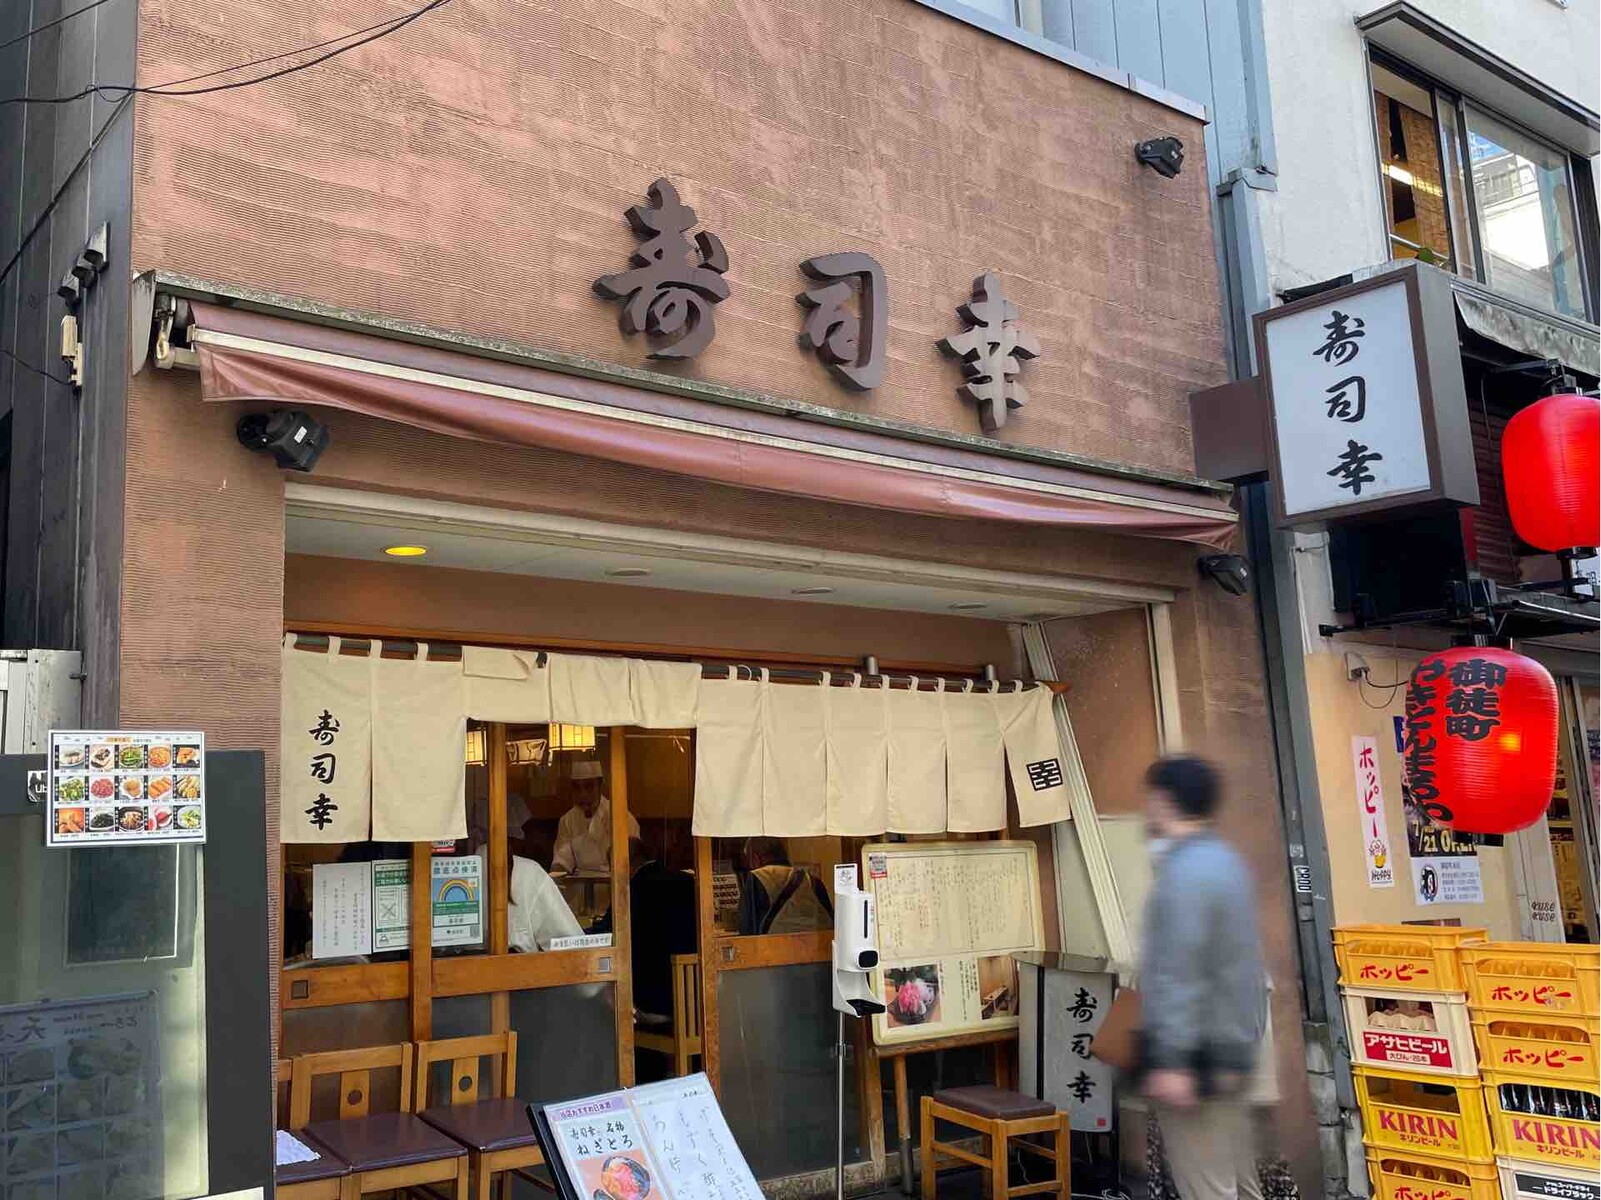 上野の 寿司幸 すしこう にて明朗会計で昼飲み寿司 ねぎとろなど Dales Mivisのラーメン 一人飲みなど